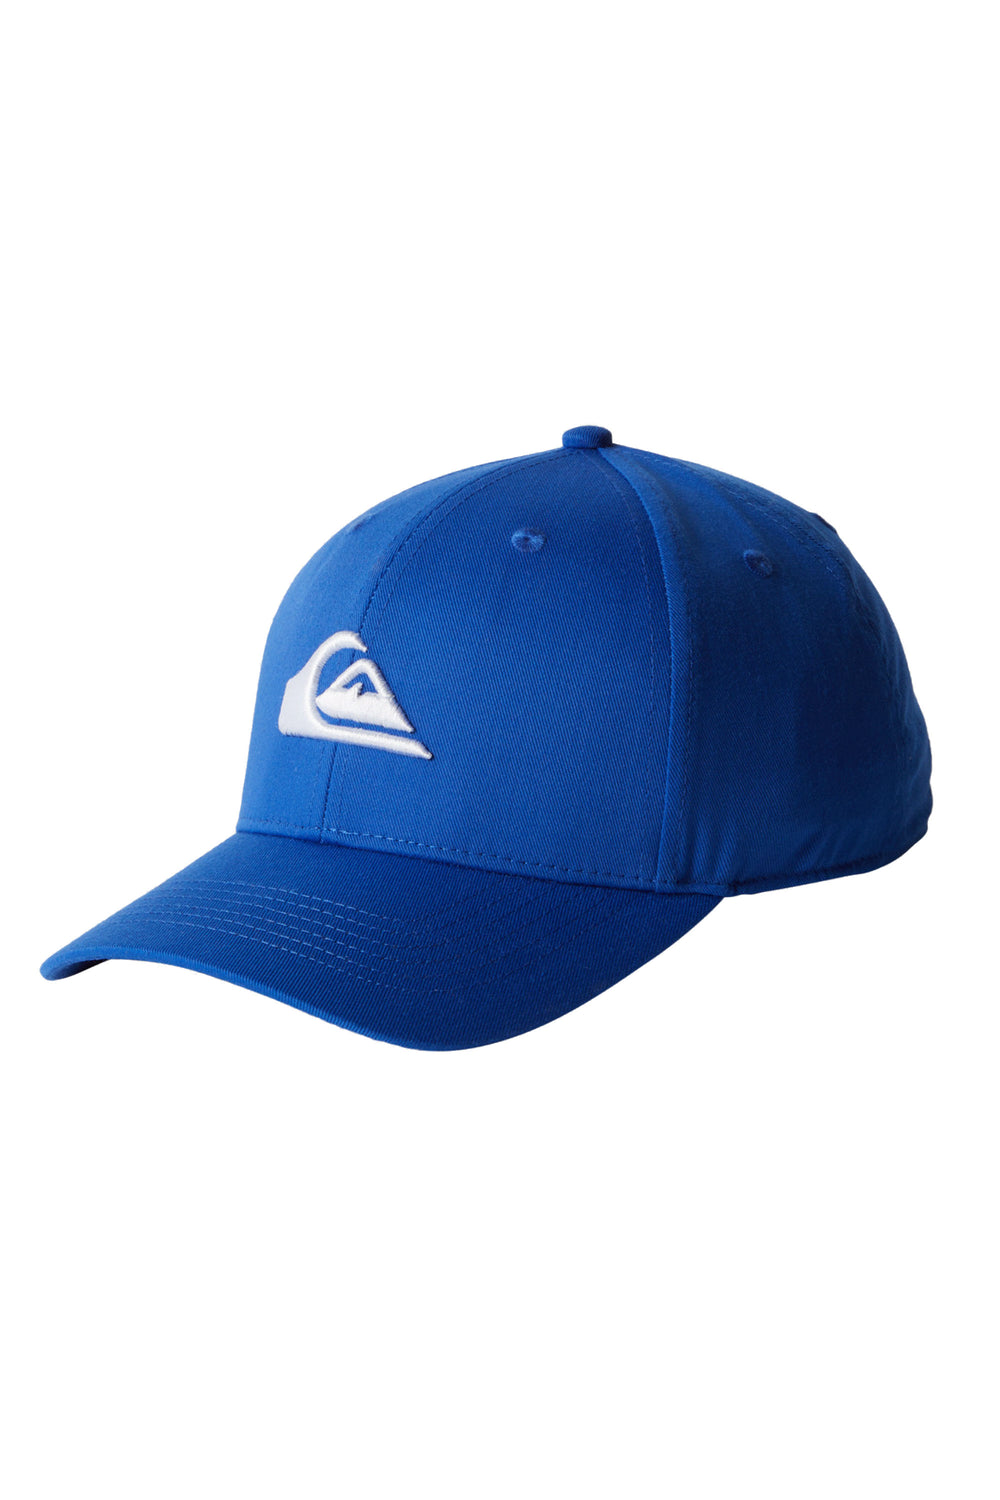 PUKAS-SURF-SHOP-CAP-QUIKSILVER-DECADES-BLUE